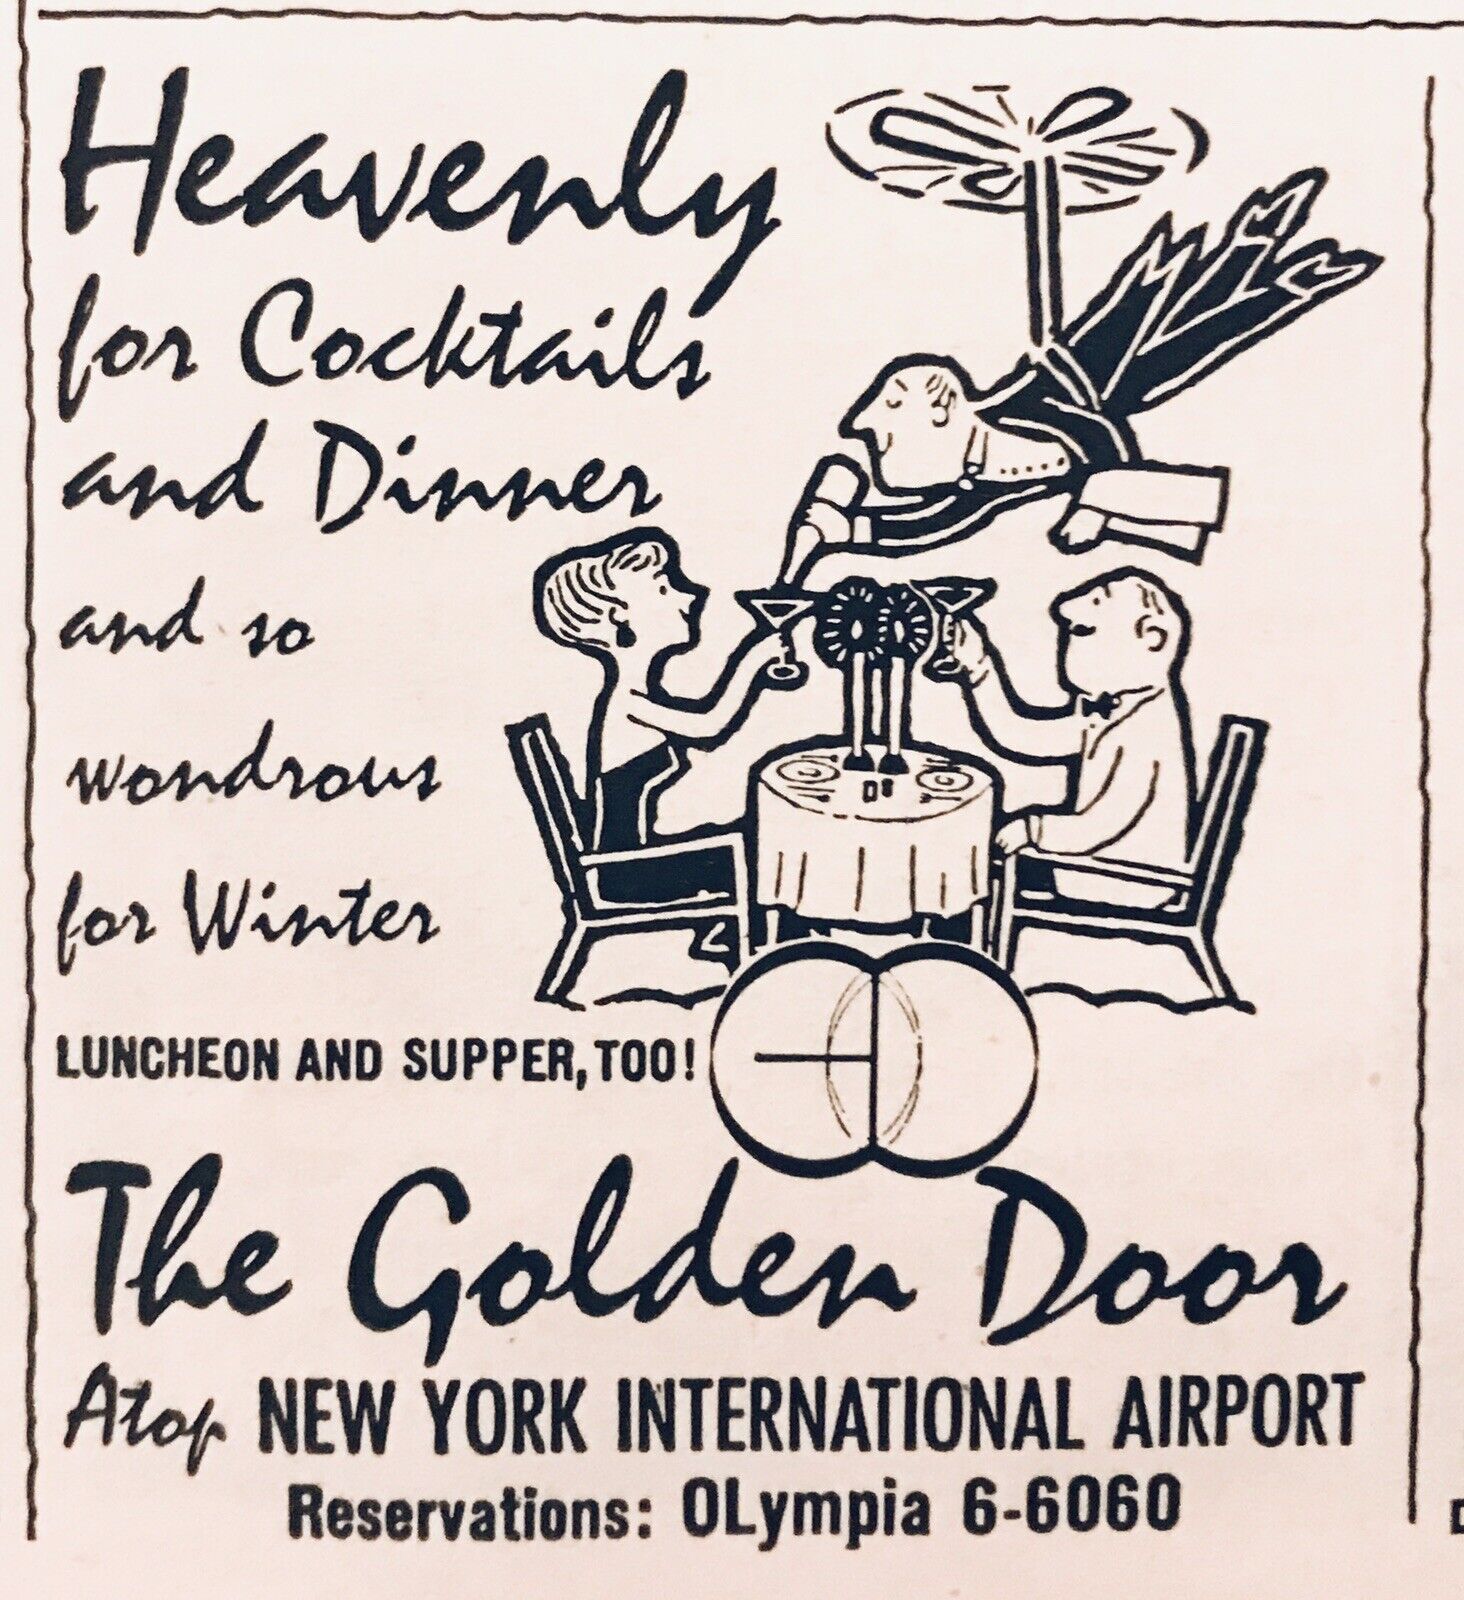 1958 Atop New York International Airport Golden Door Restaurant Bar 2.5\